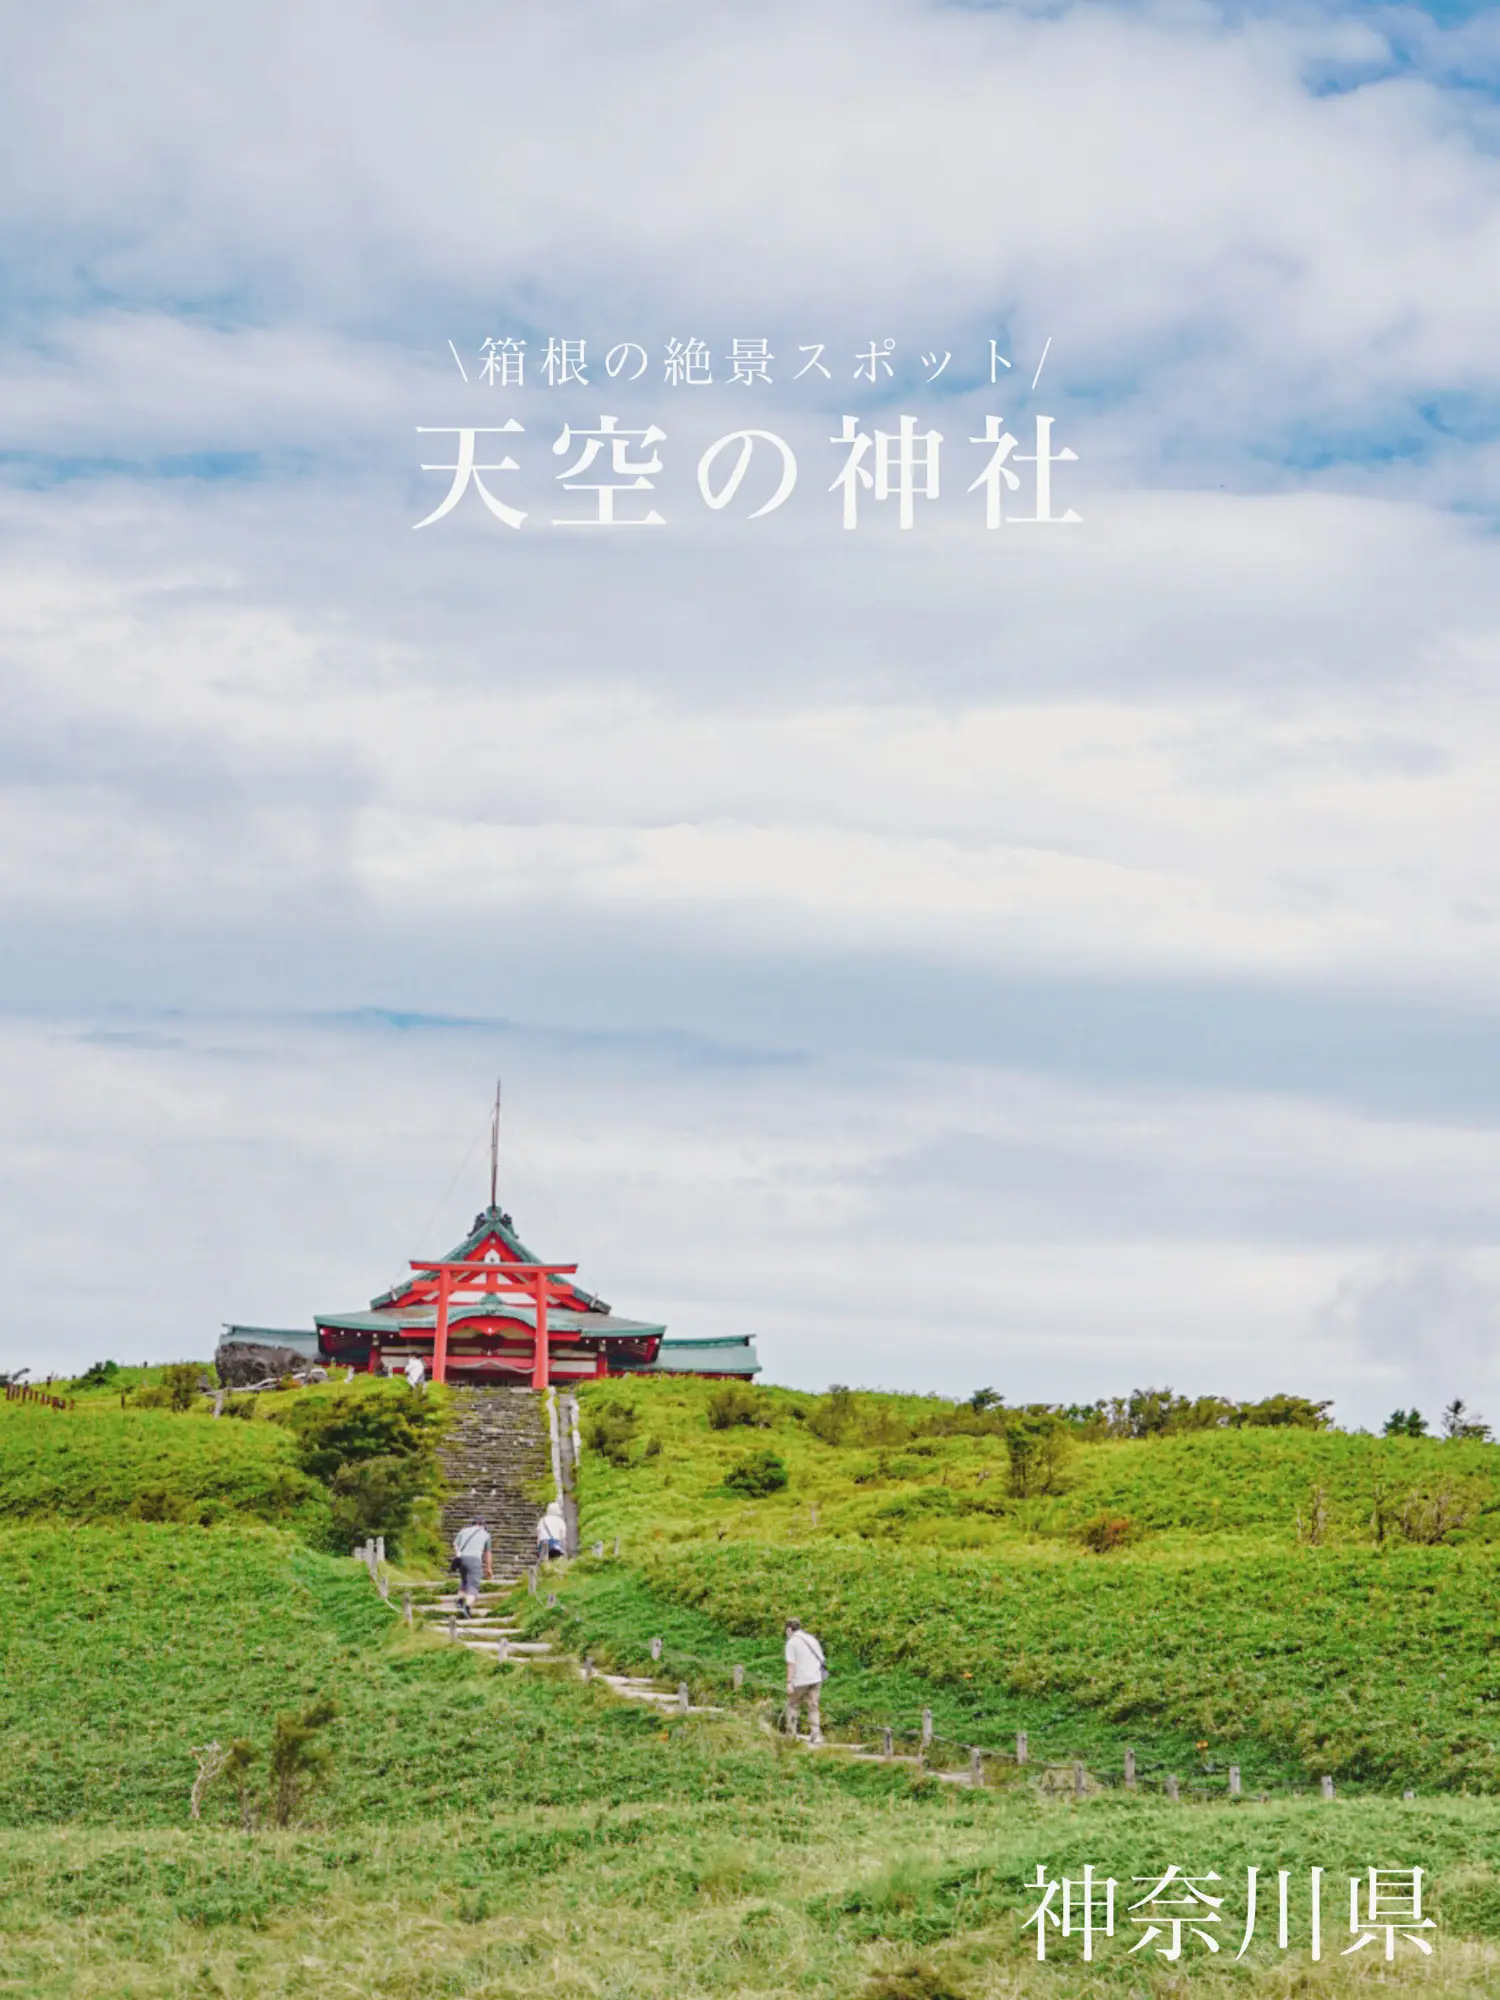 【神奈川県】箱根のパワースポット「天空の神社」が絶景すぎるの画像 (1枚目)